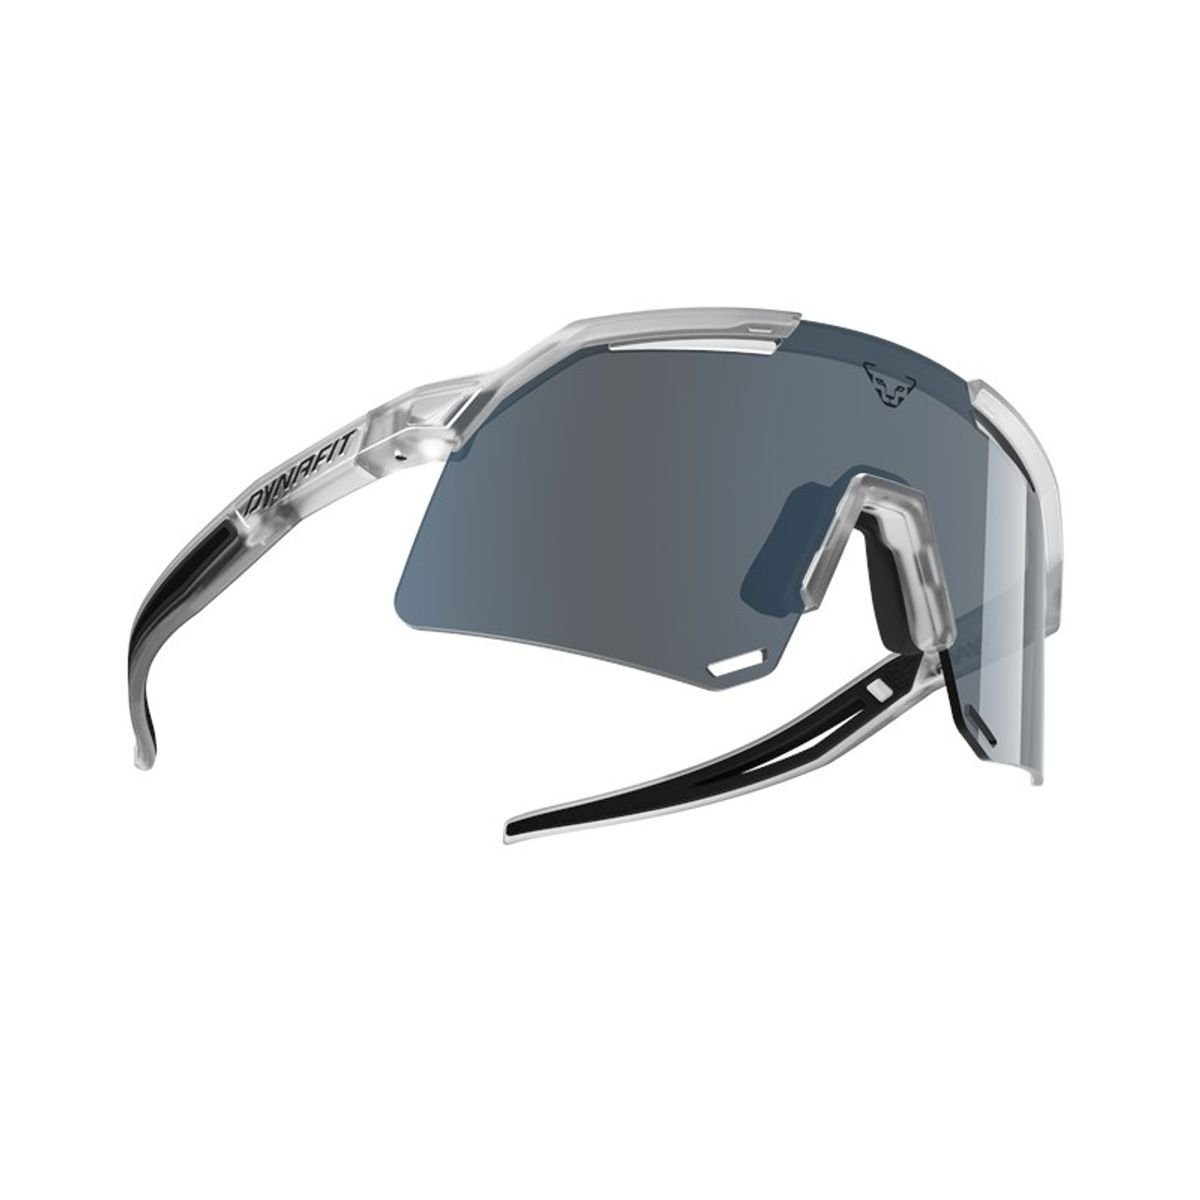 Ultra quiet DynaFit Evo 0530 3, out Dynafit shade/black Cat UNI - Sportbrille Sunglasses,